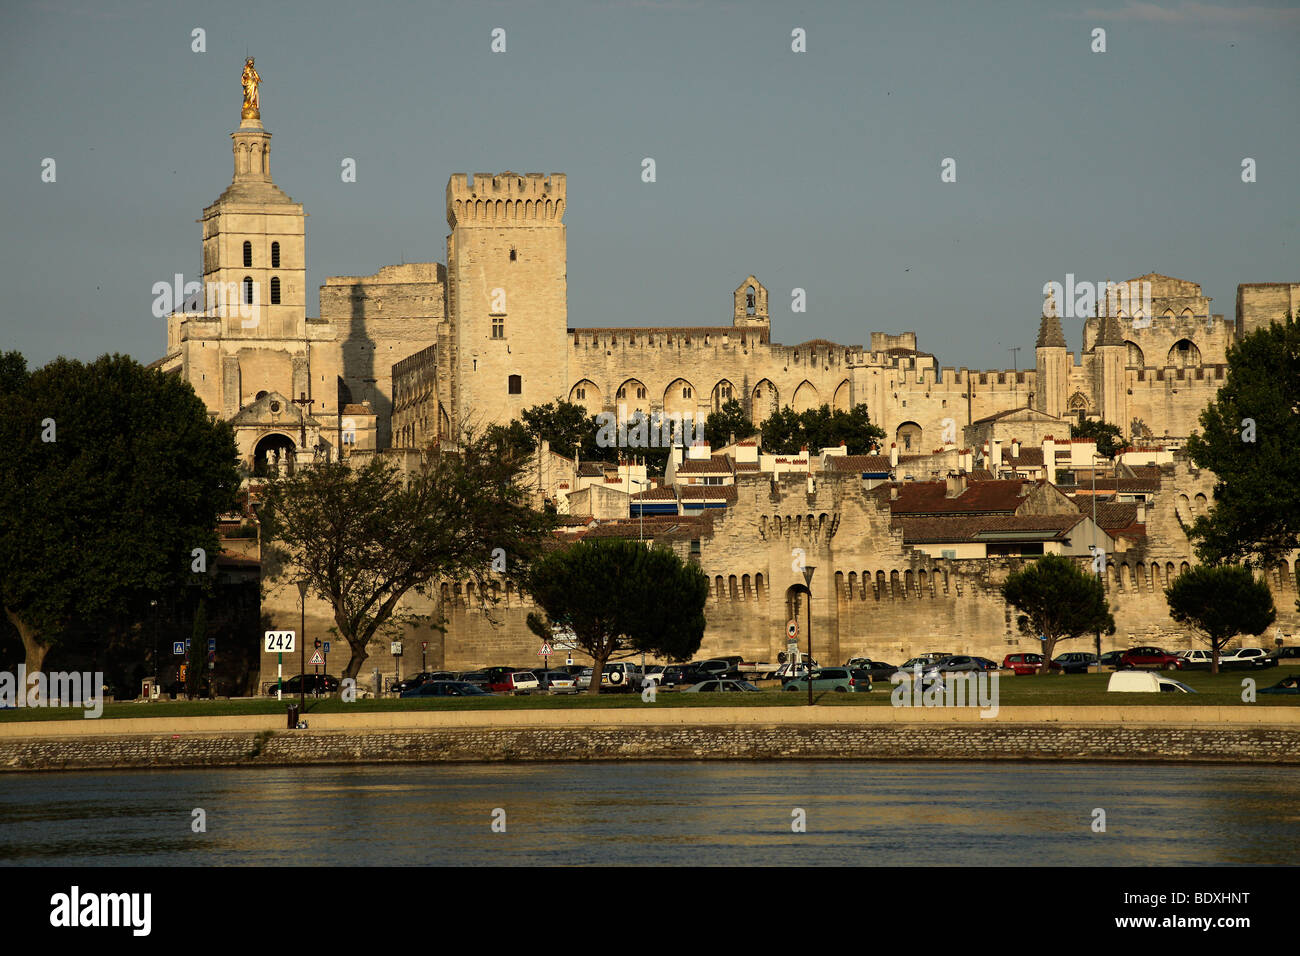 Paesaggio con Palais des Papes, Papa's Palace, la cattedrale e il fiume Rodano in Avignone, Provence, Francia Foto Stock